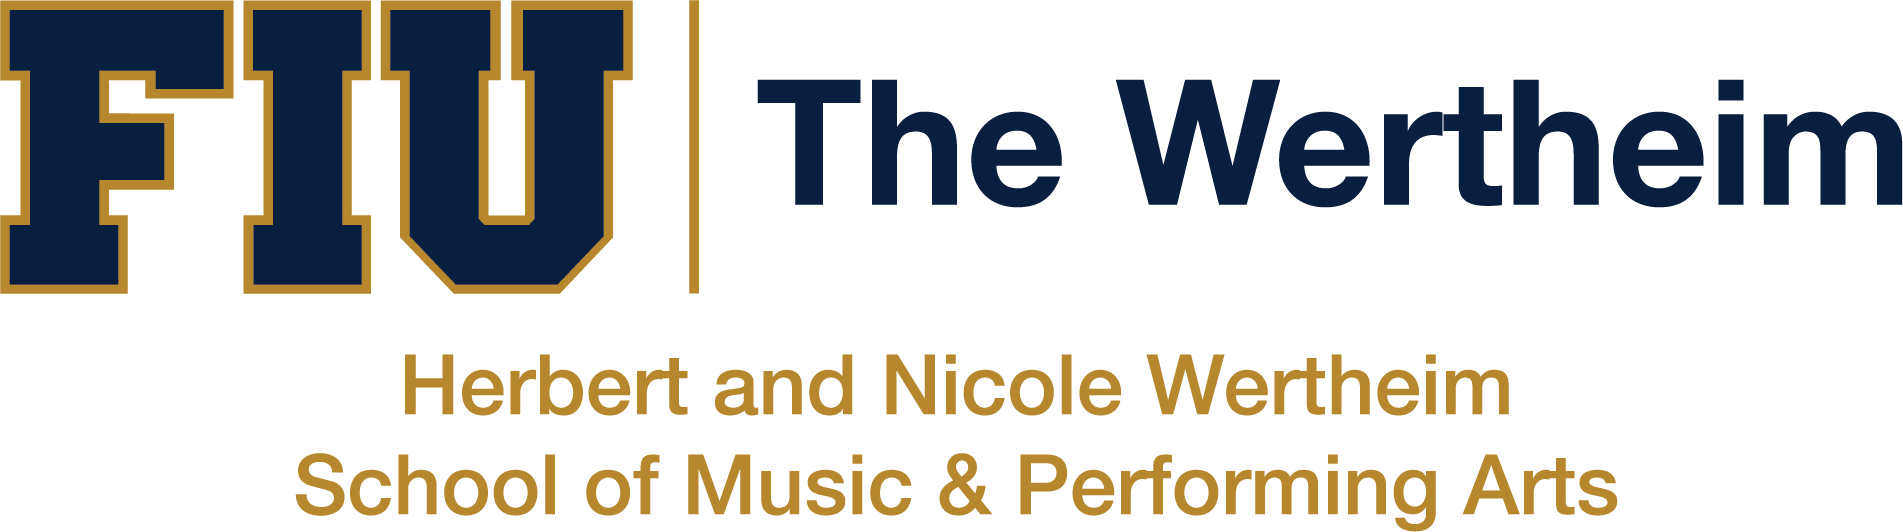 The Wertheim Logo